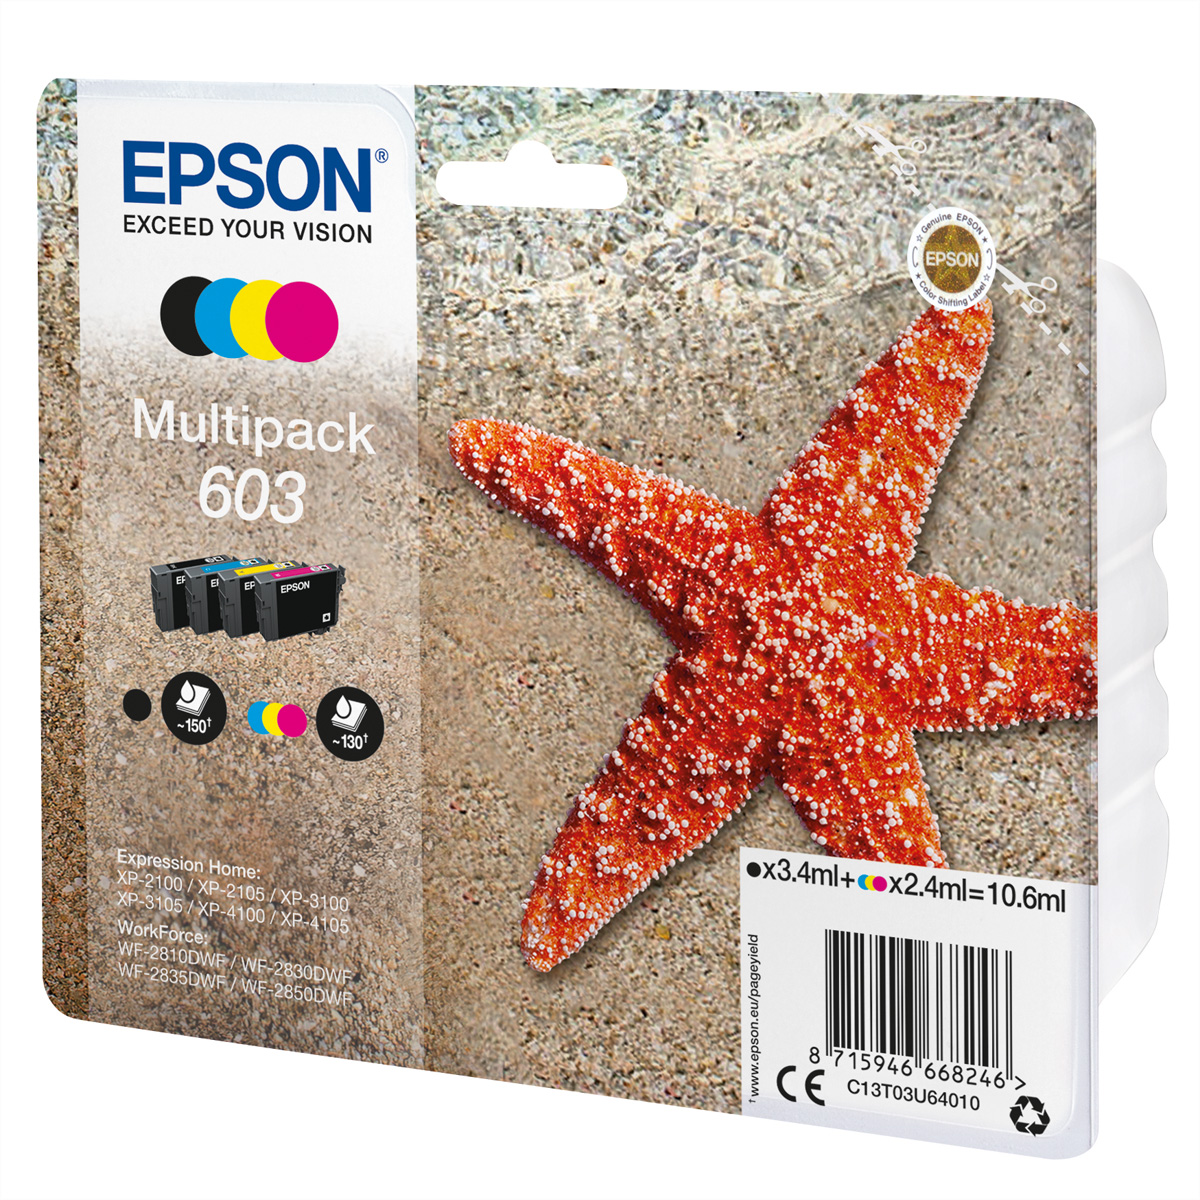 EPSON C13T03U64010, 603, Multipack, schwarz, cyan, magenta, yellow für EPSON Exp